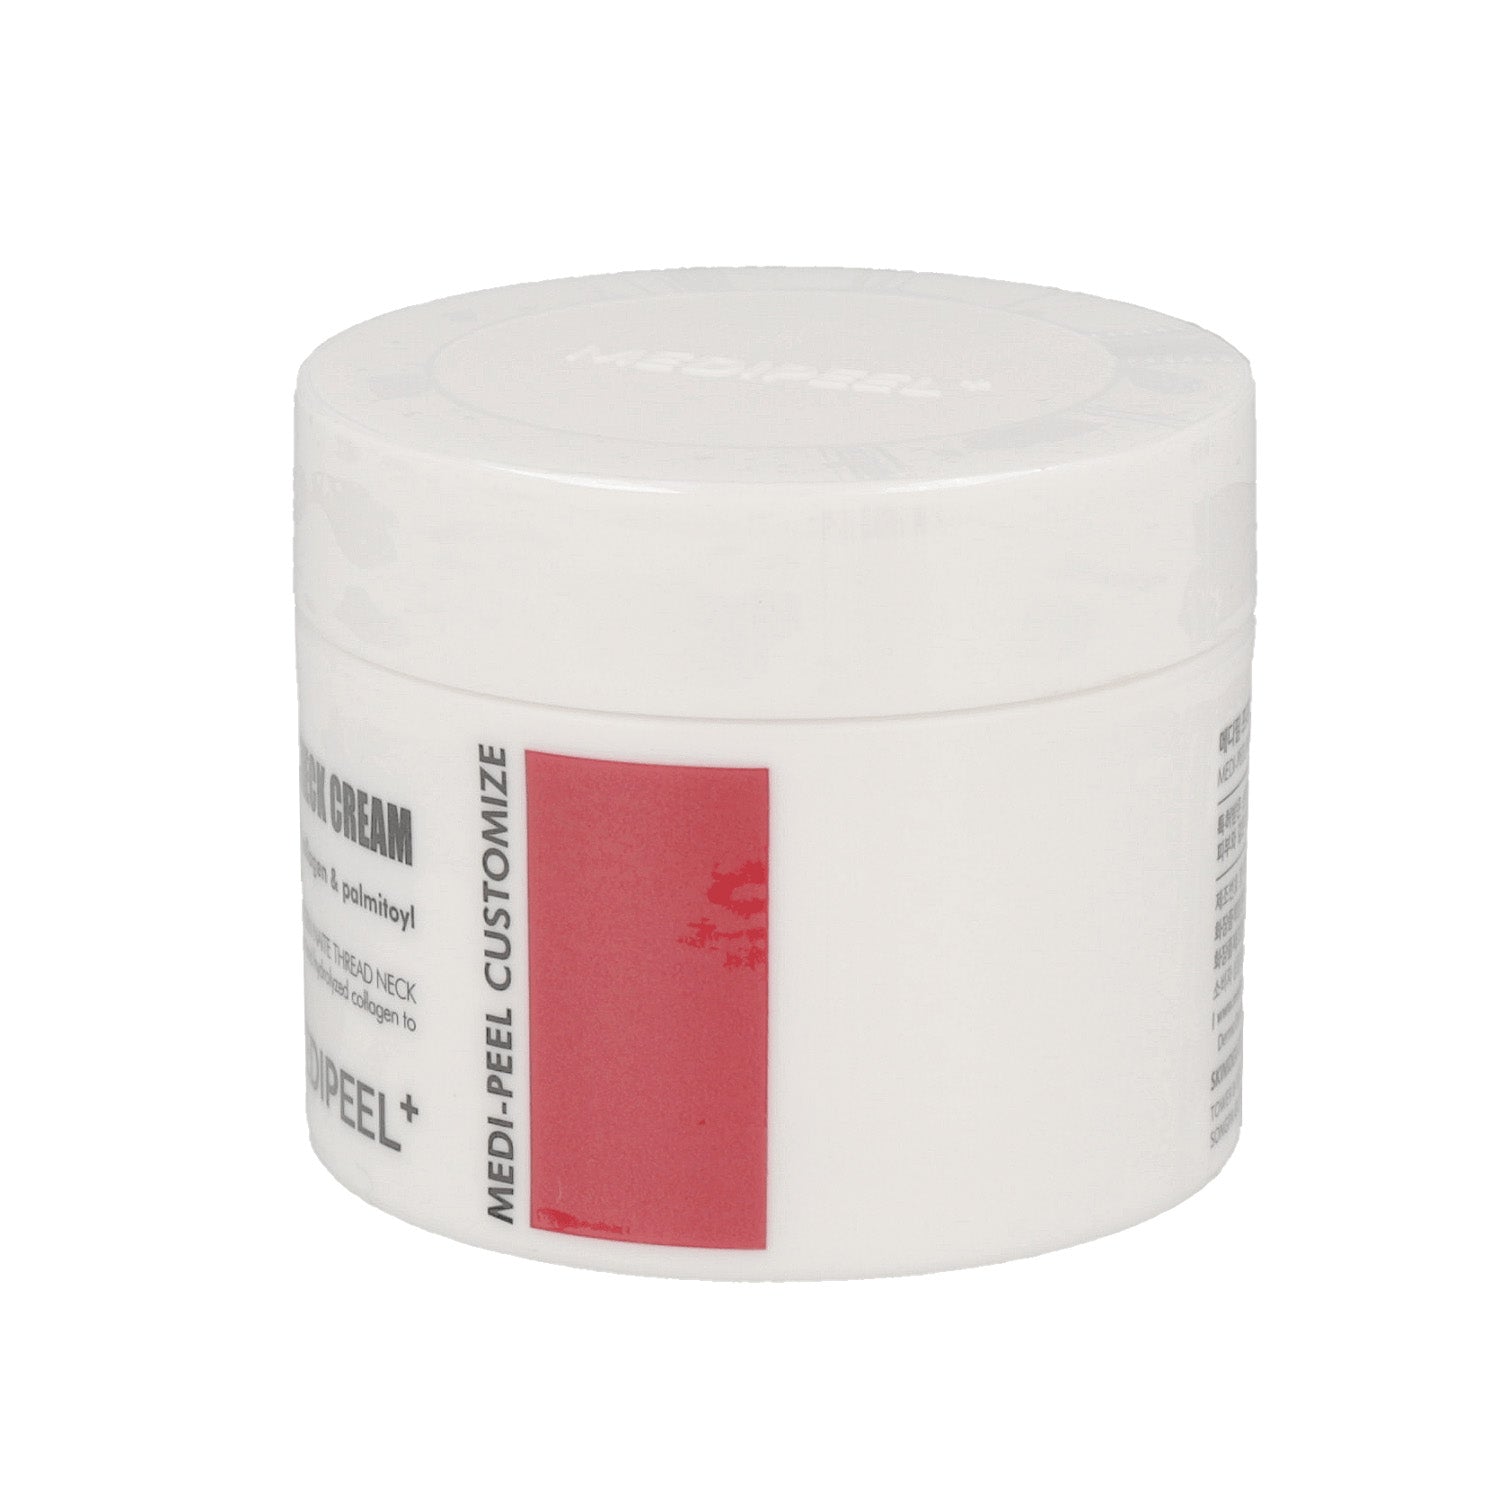 100ml MEDI-PEEL Collagen Naite Thread Neck Cream in white packaging, premium skincare product